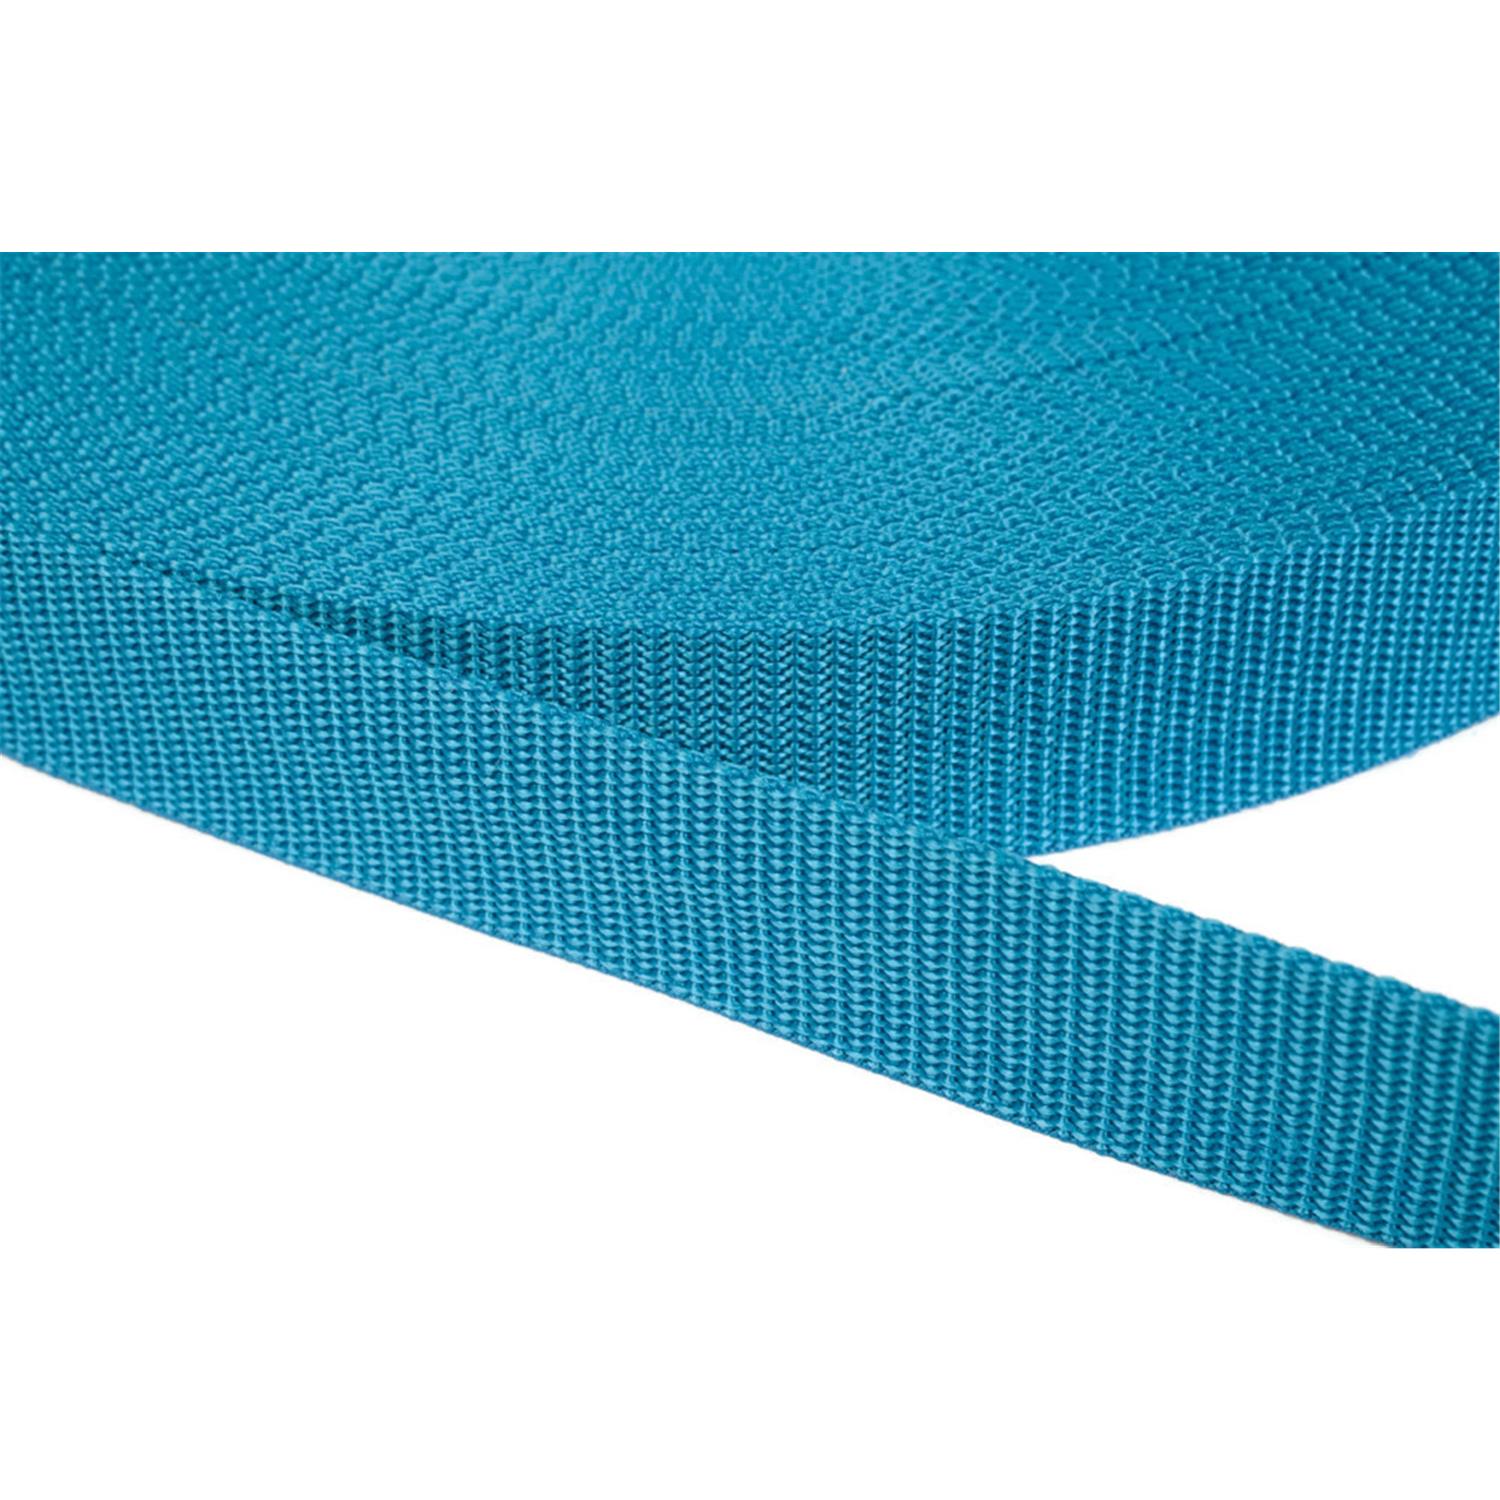 Gurtband 50mm breit aus Polypropylen in 41 Farben 29 - türkis 6 Meter